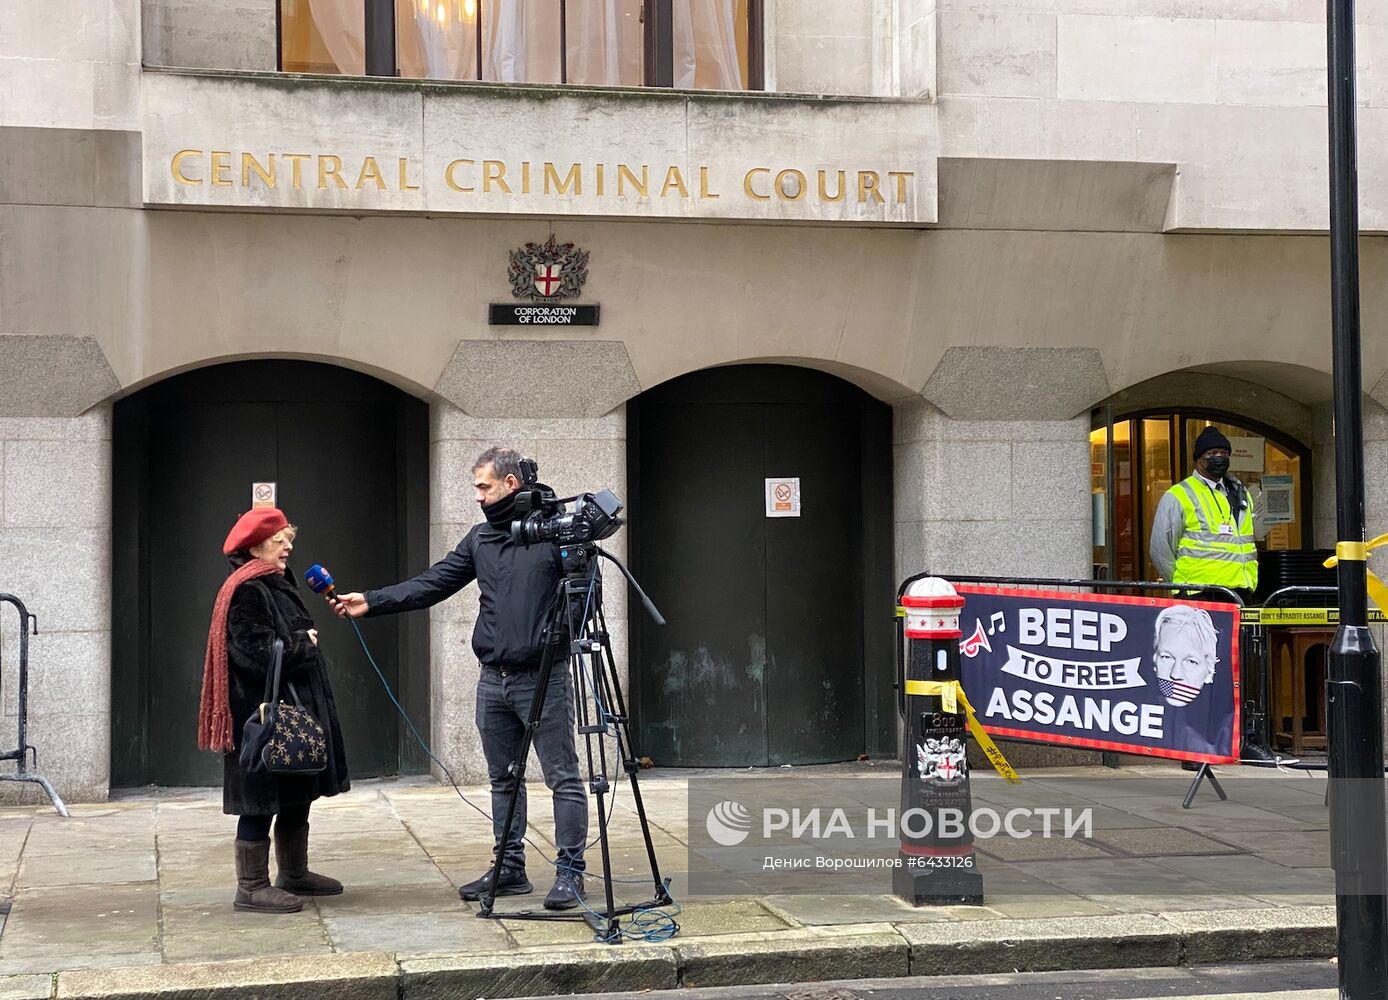 Суд в Лондоне отказался экстрадировать Ассанжа в США